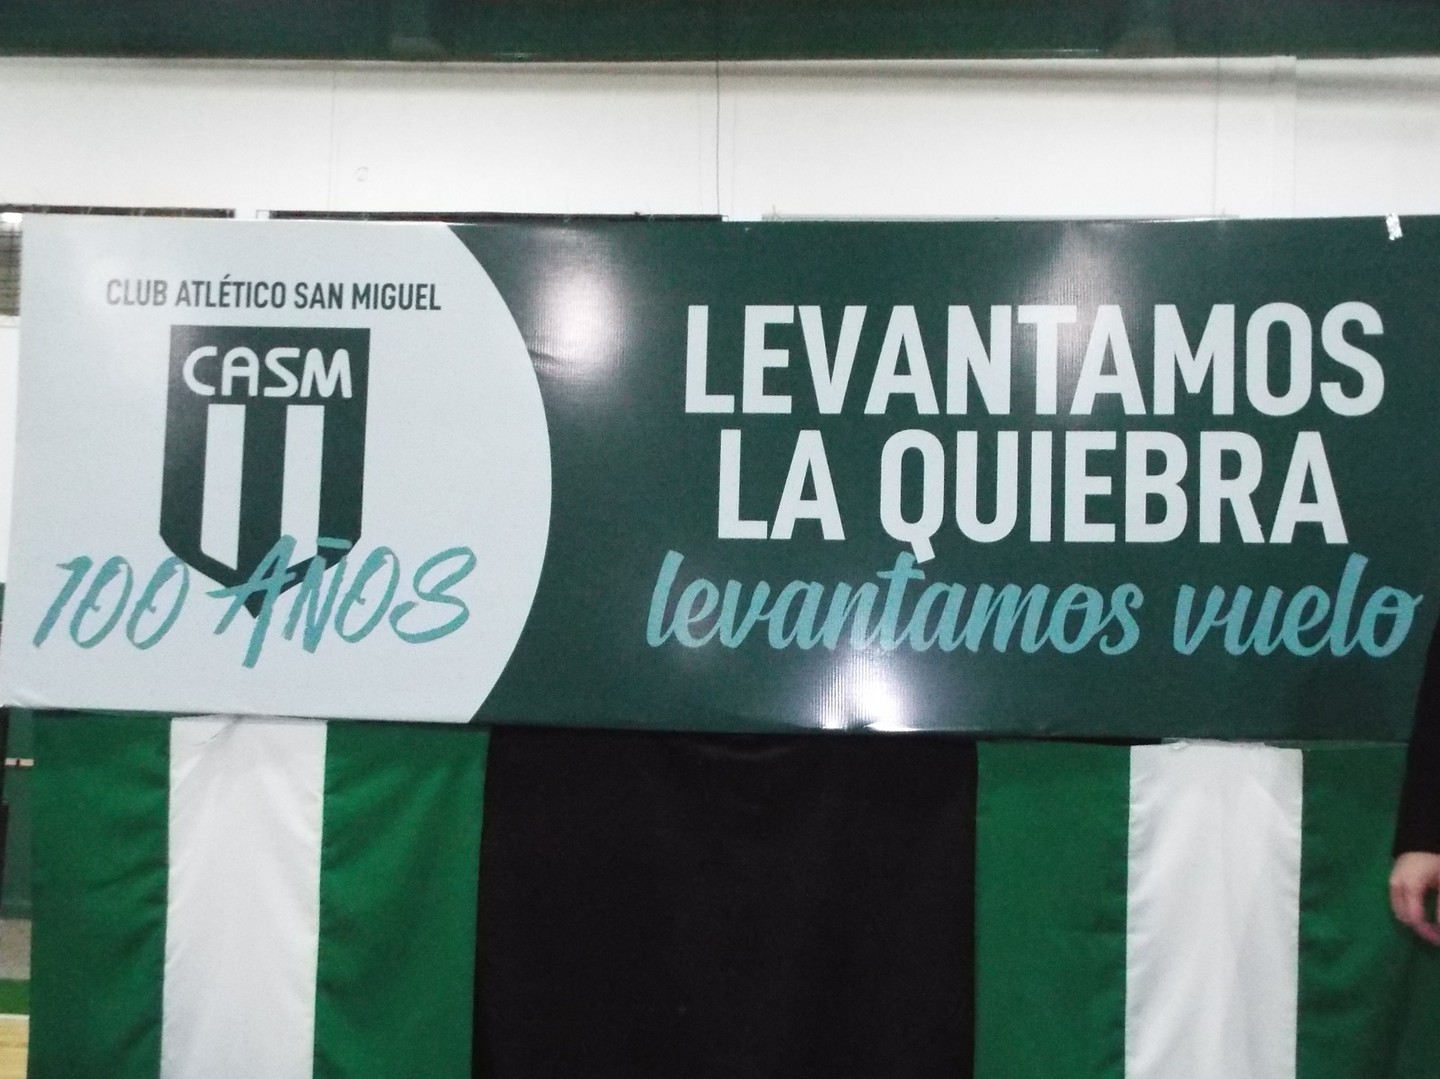 somosdelmismobarro: El Club Atlético San Miguel de la ciudad de Ibarra  festejo la Navidad